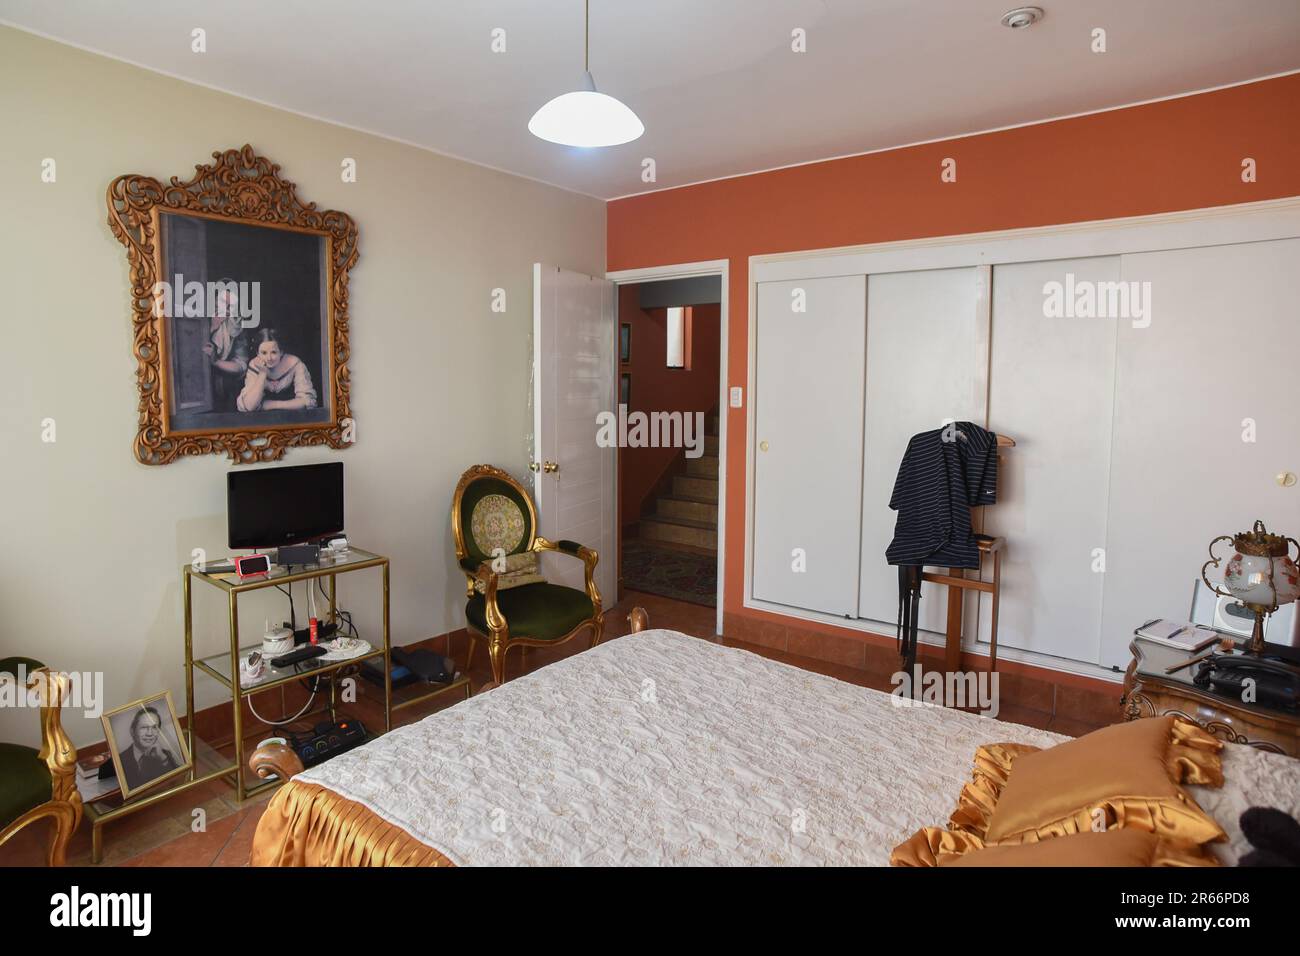 habitacion para turistas con muebles clasicos, closet y ventana Stock Photo